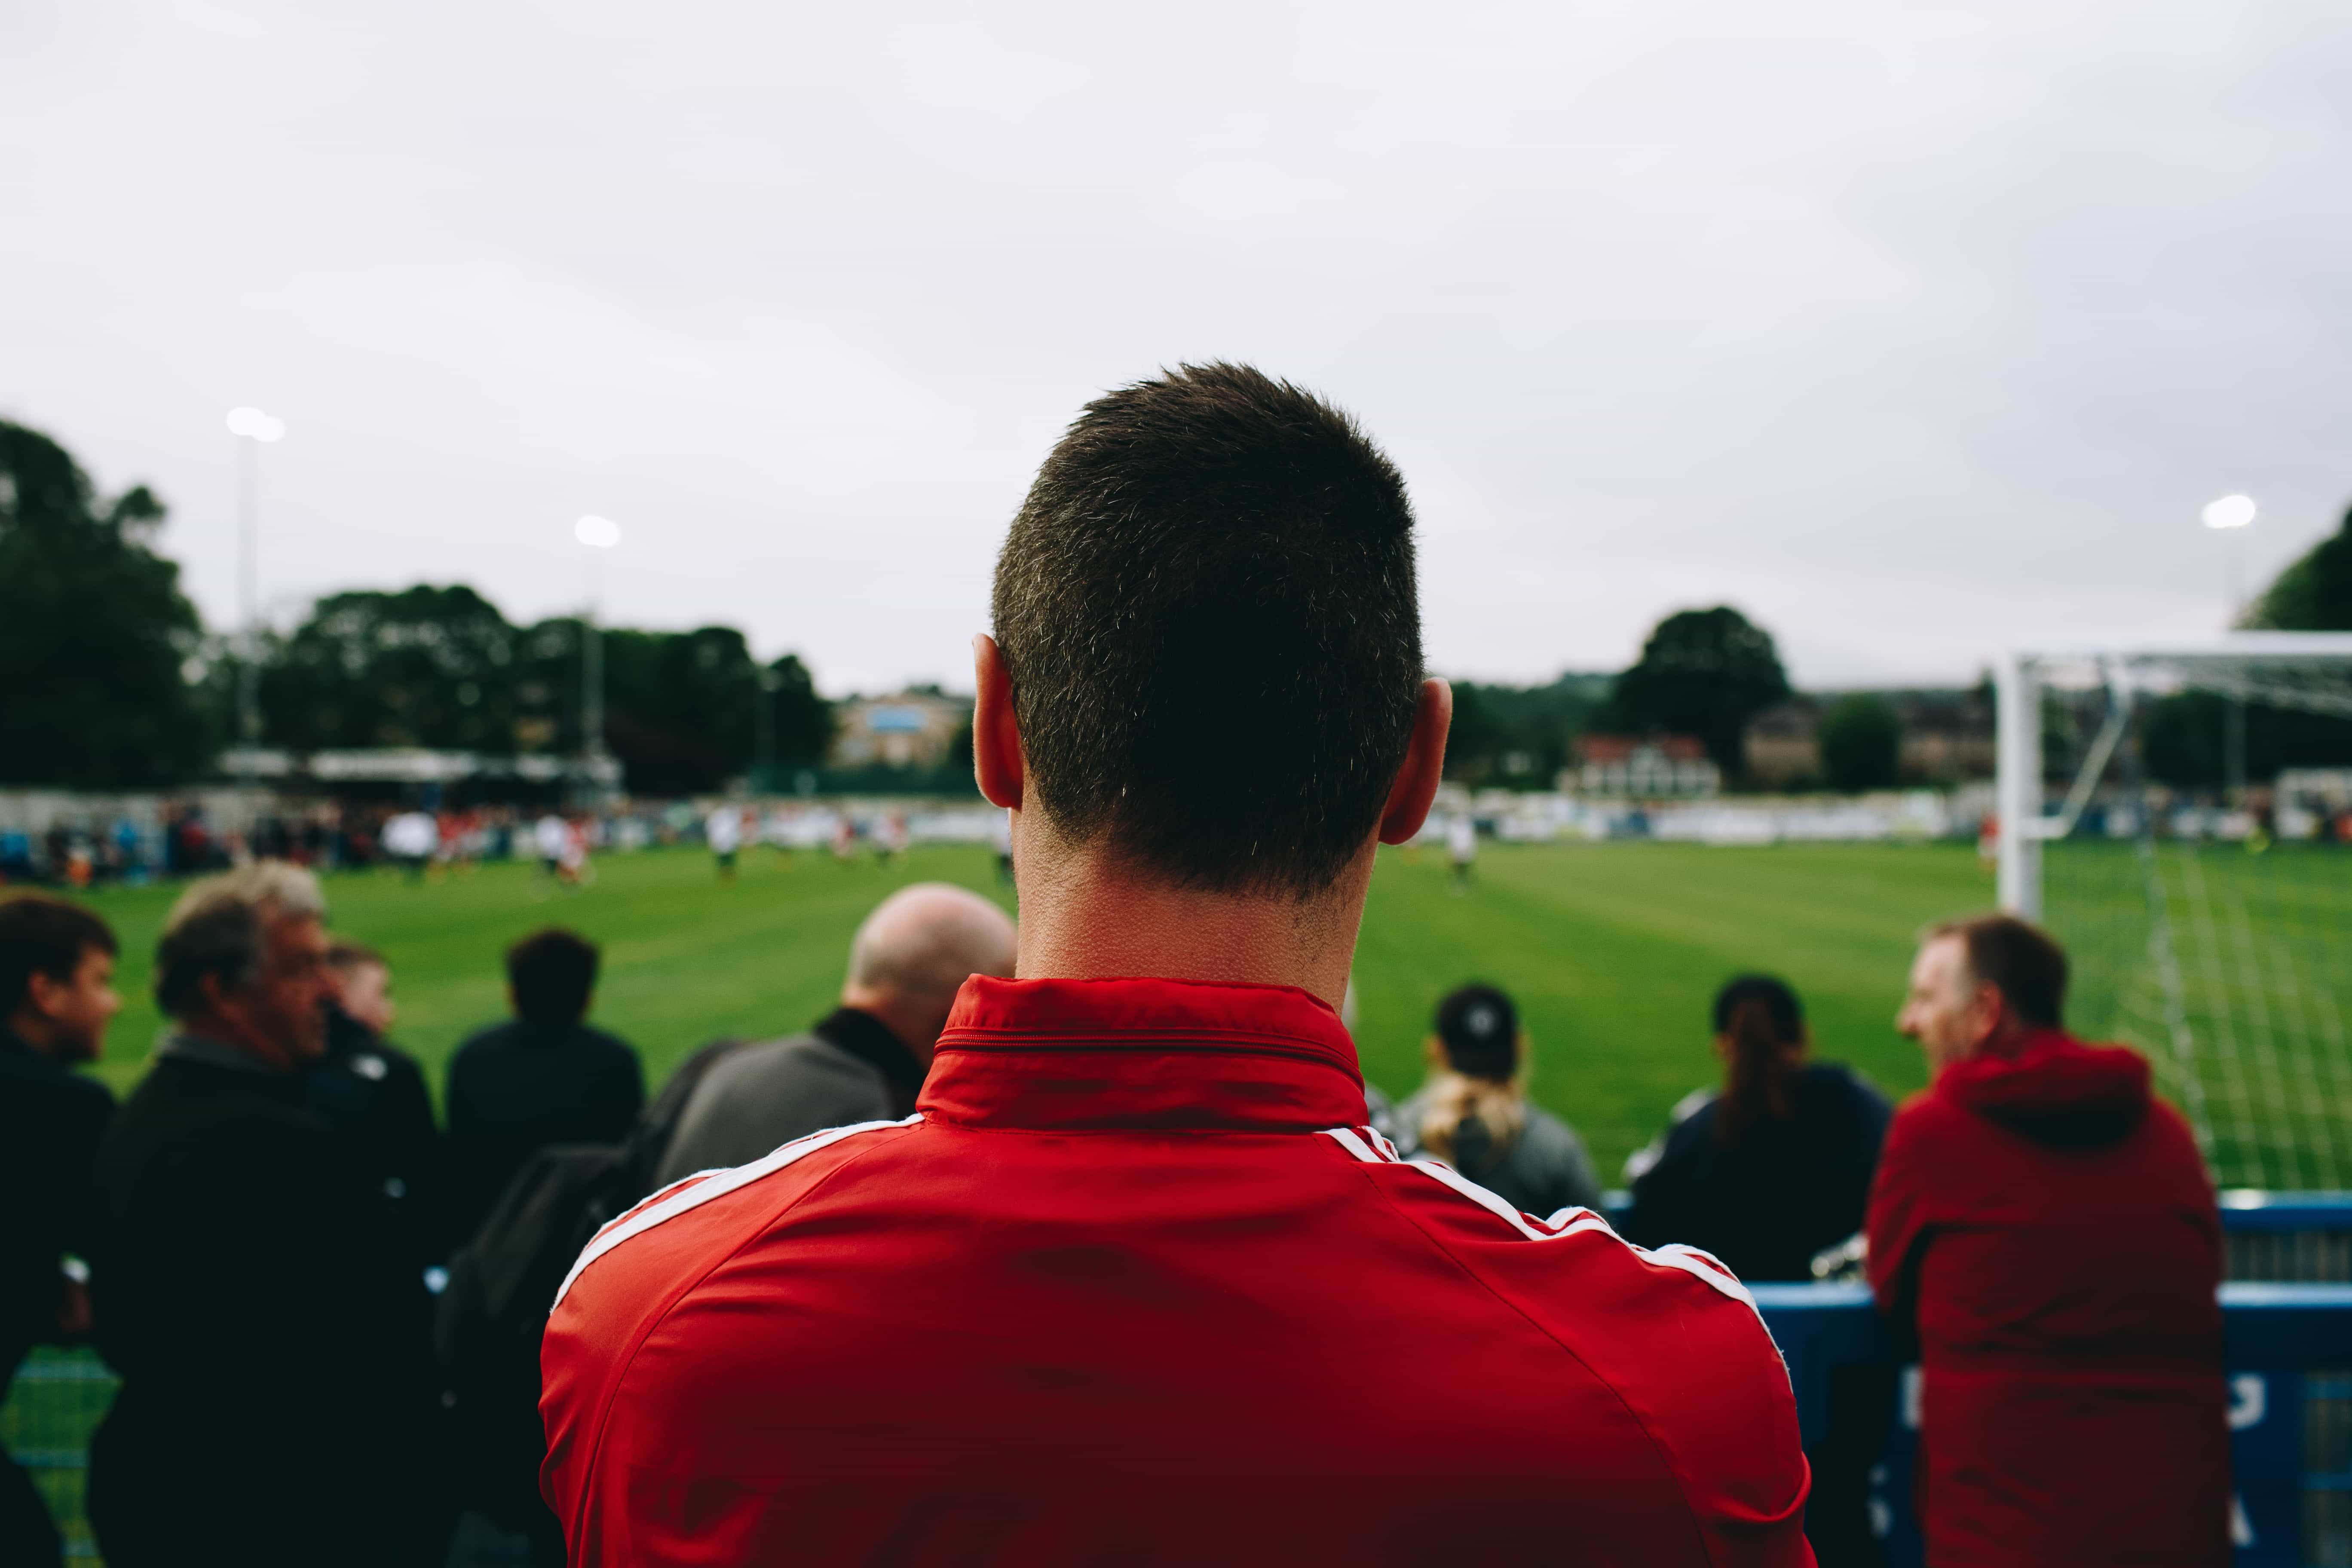 Seorang pria dengan setelan olahraga merah membelakangi kamera, berdiri di tribun stadion dan menonton pertandingan sepak bola bersama dengan penggemar lainnya.